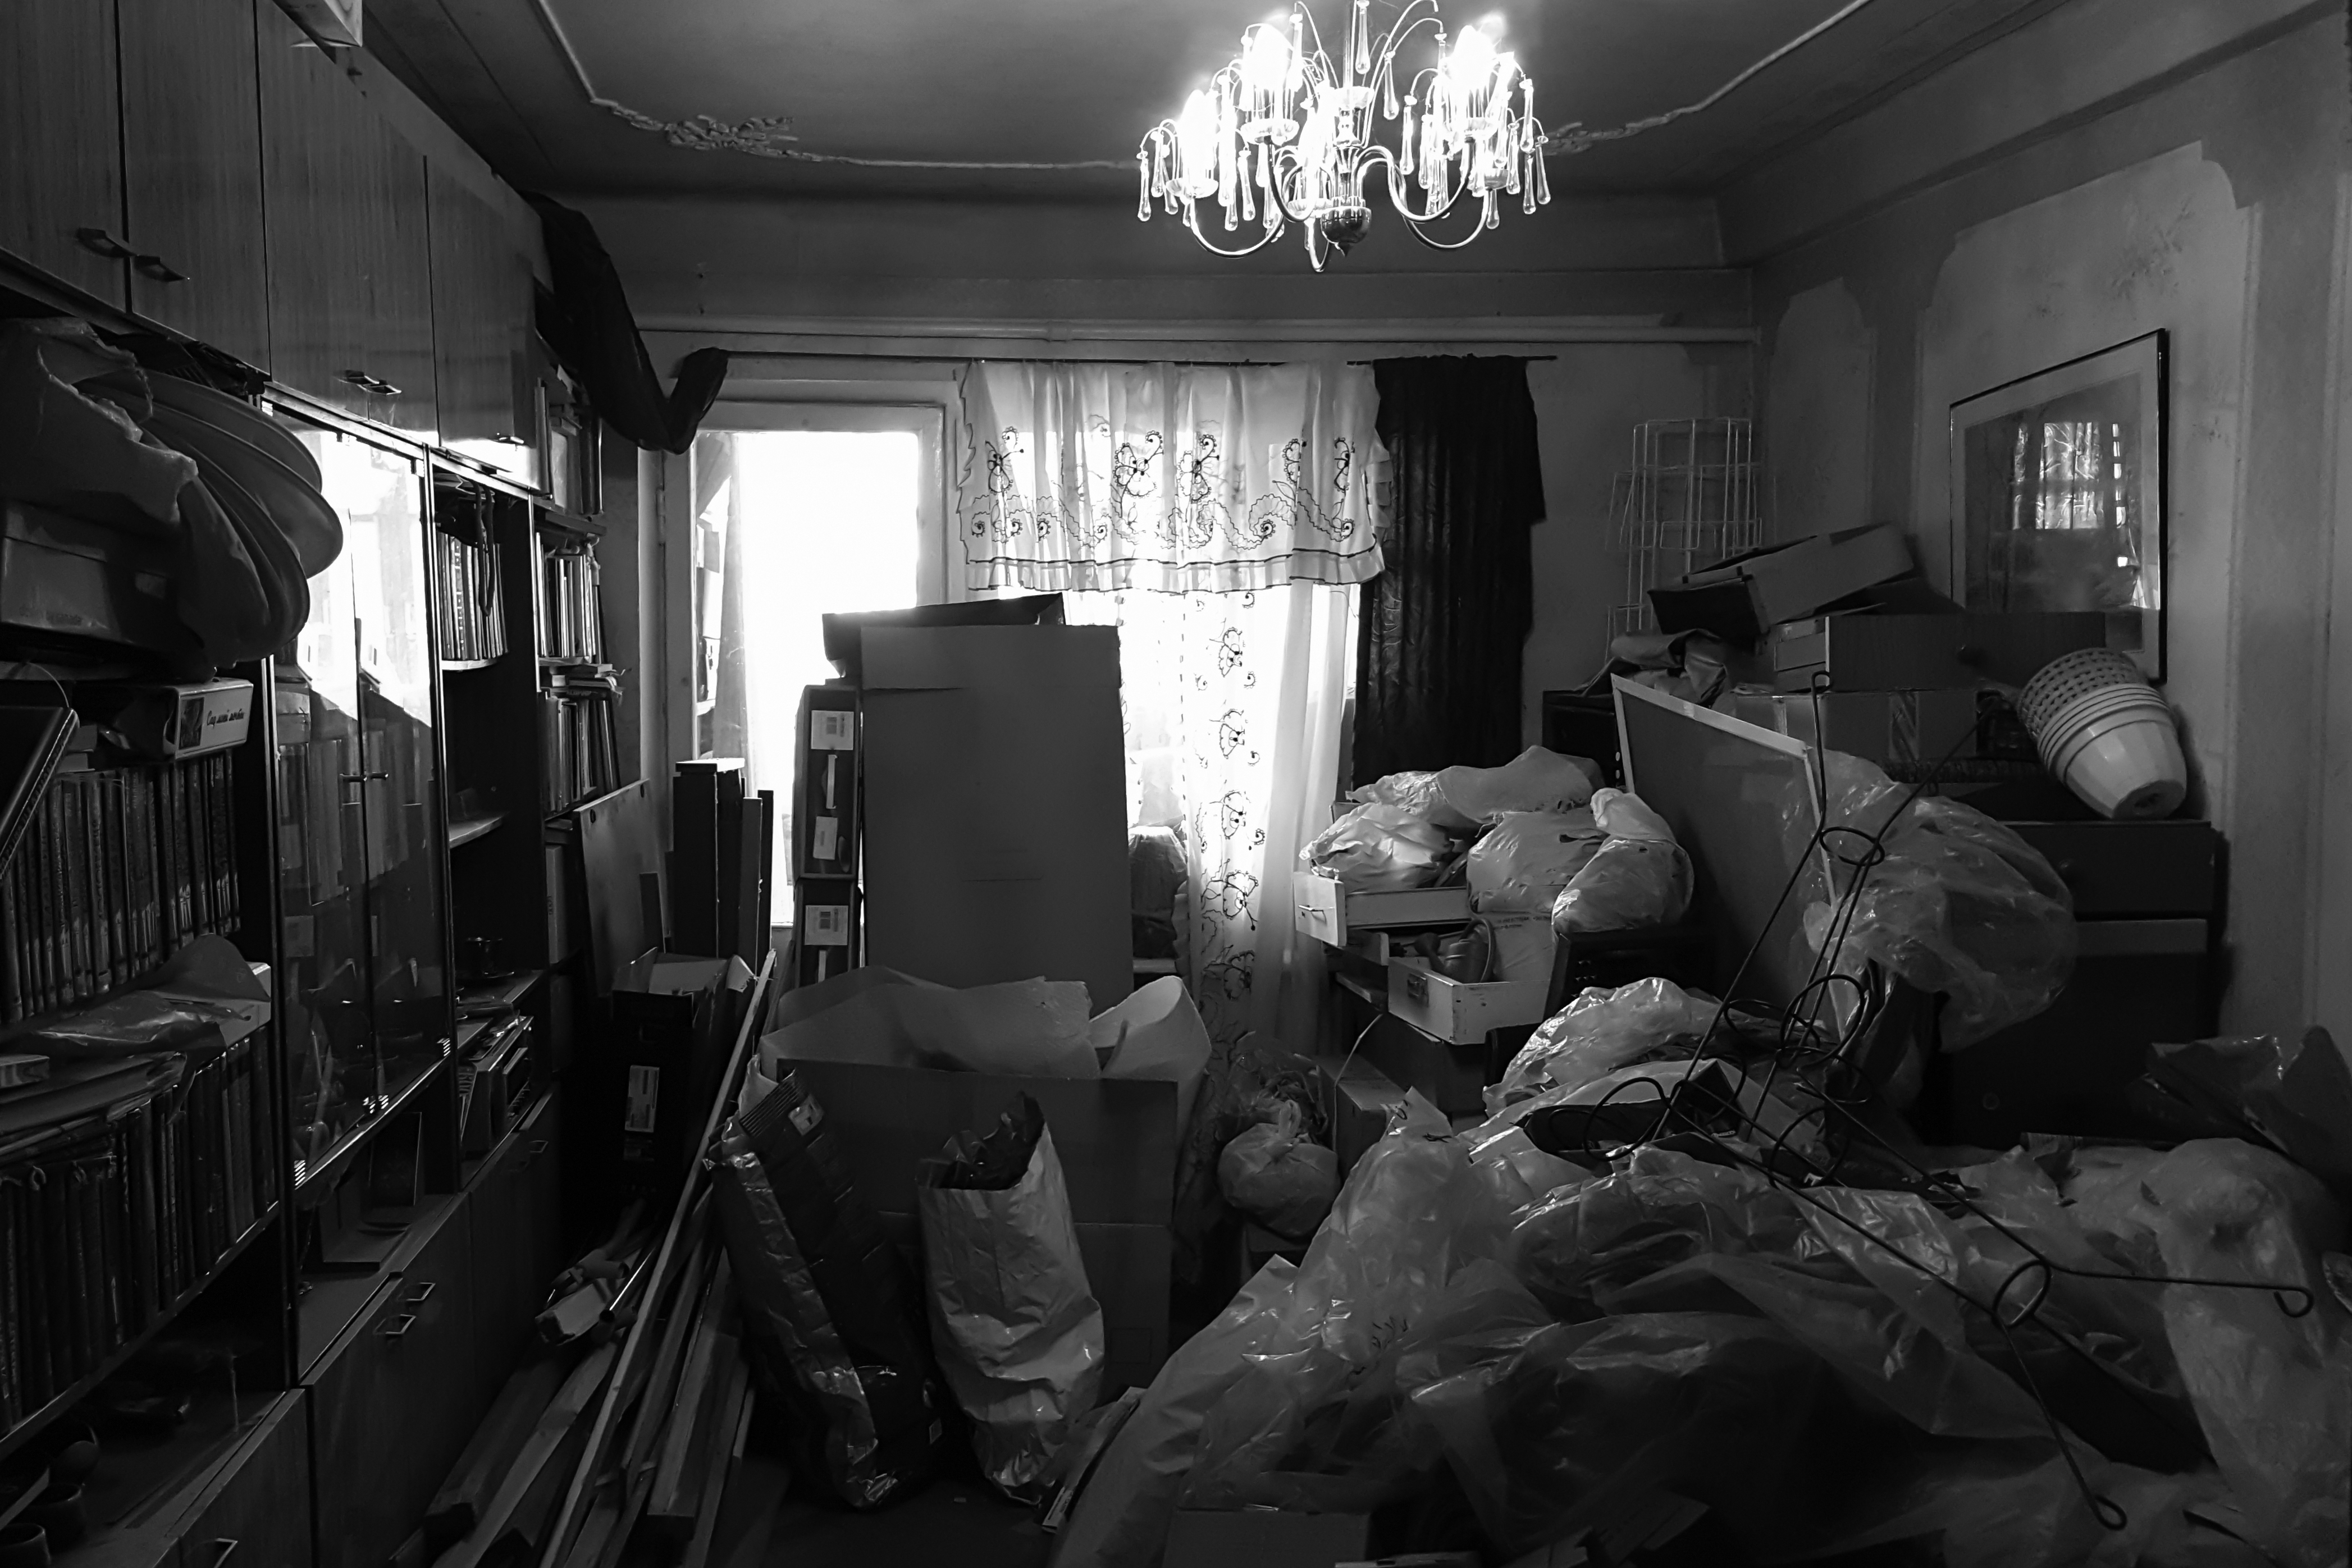 Bratia Collyerovci: Dvaja samotárski čudáci, ktorí našli svoju smrť v dome plnom odpadkov